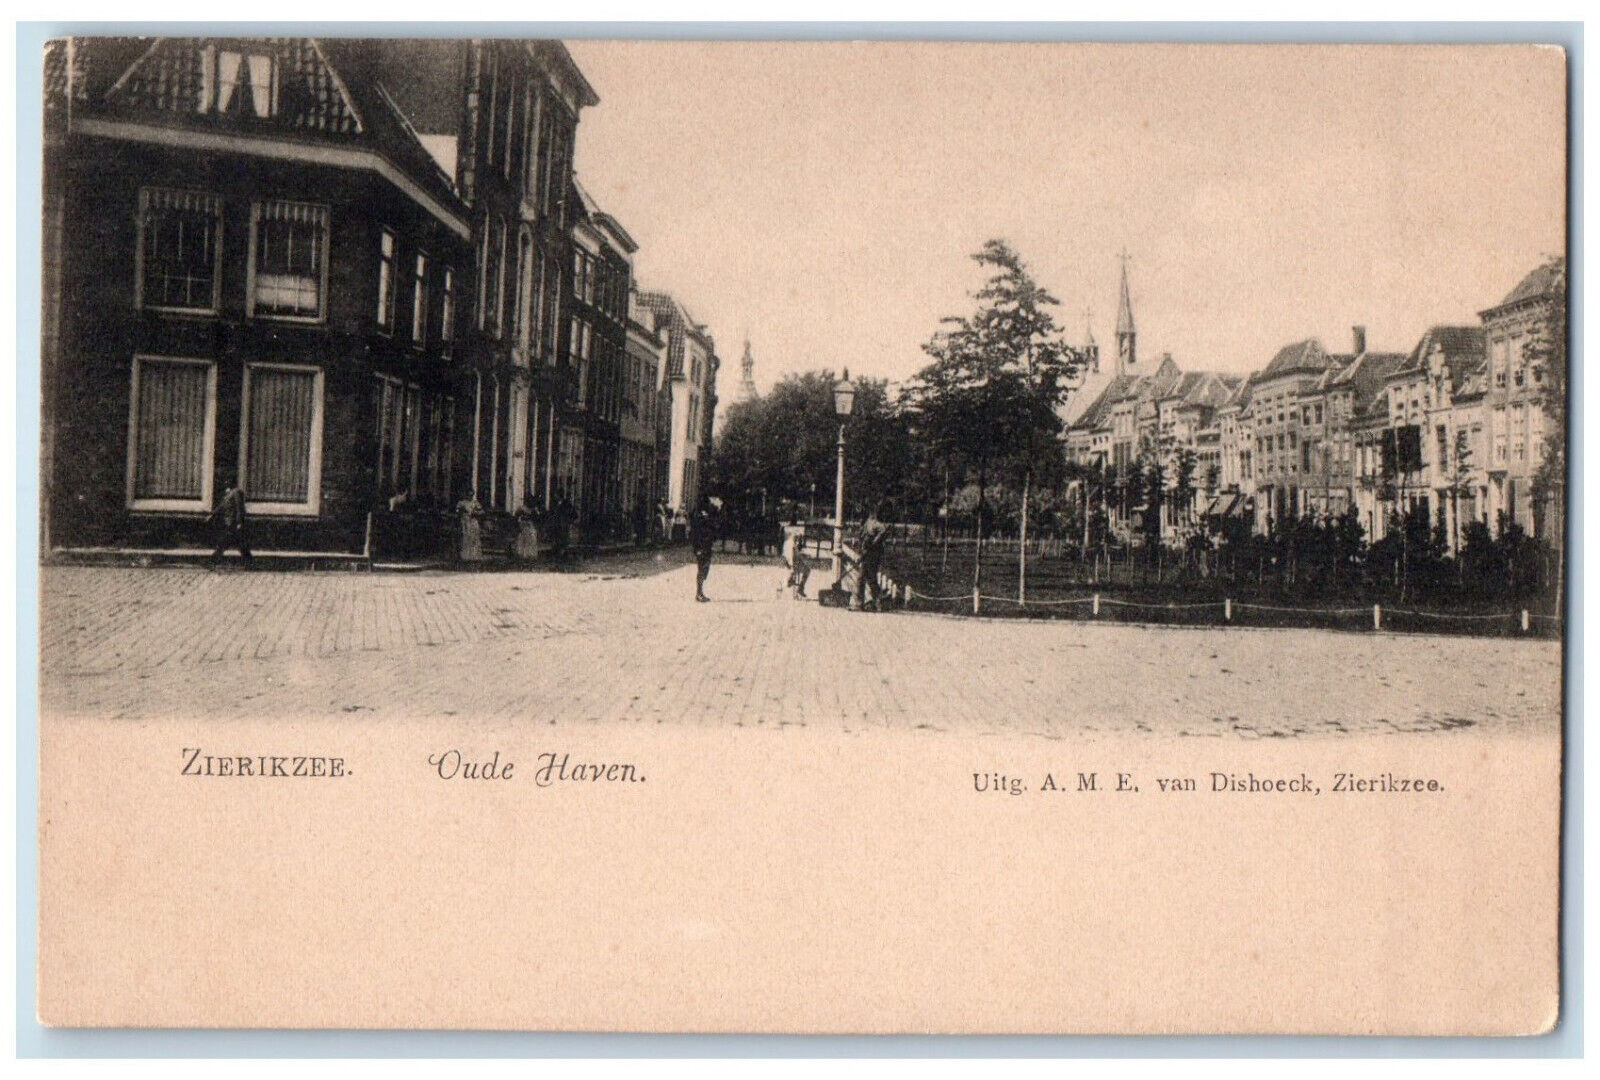 c1905 View of Old Harbor Zierikzee Netherlands Unposted Antique Postcard